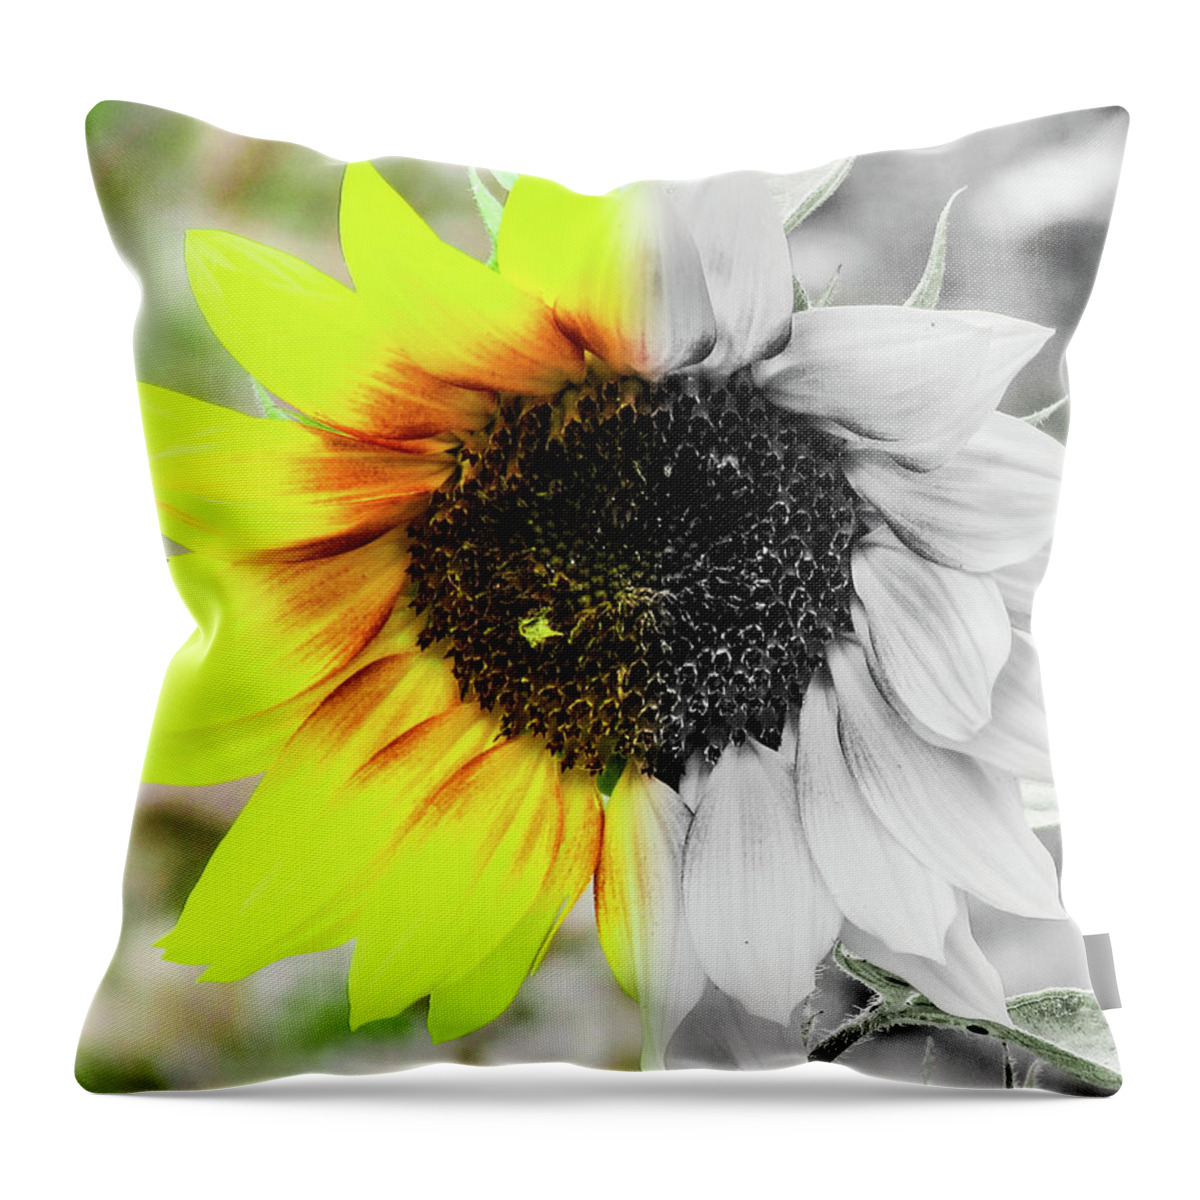 Flower Throw Pillow featuring the photograph Sunflower #1 by Cesar Vieira